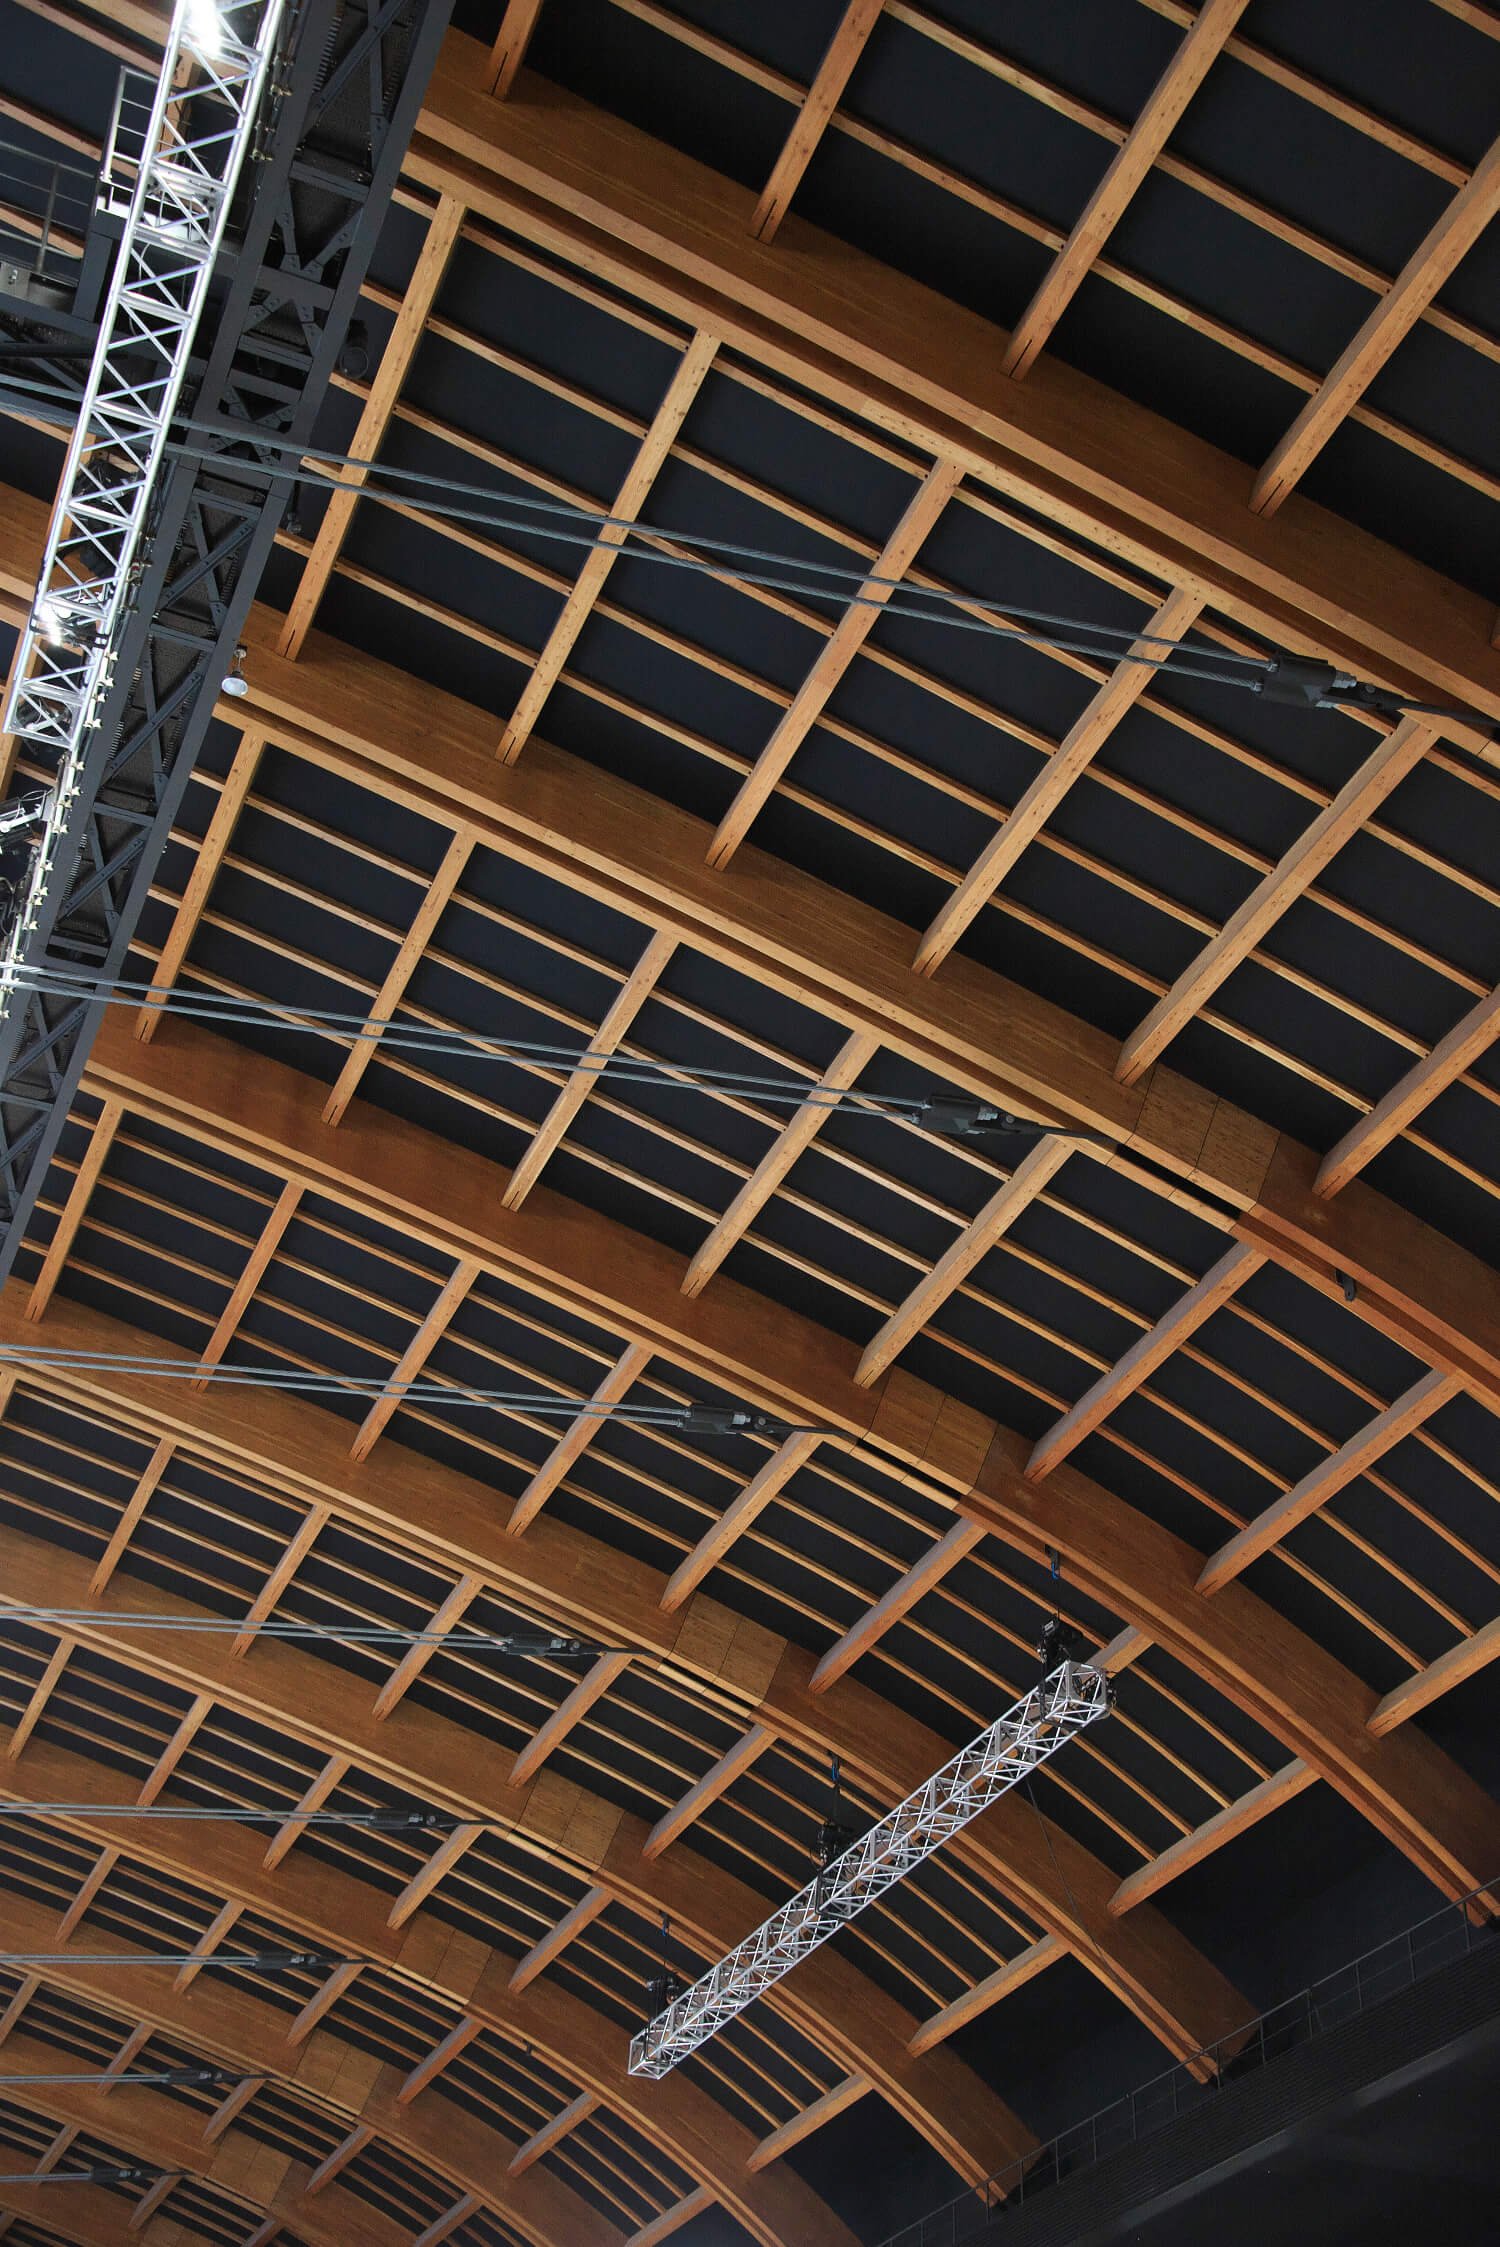 屋根は世界最大級の全長約90mもの木造アーチが支える。天井は国産カラマツ材を使用。外装には国産スギ材。